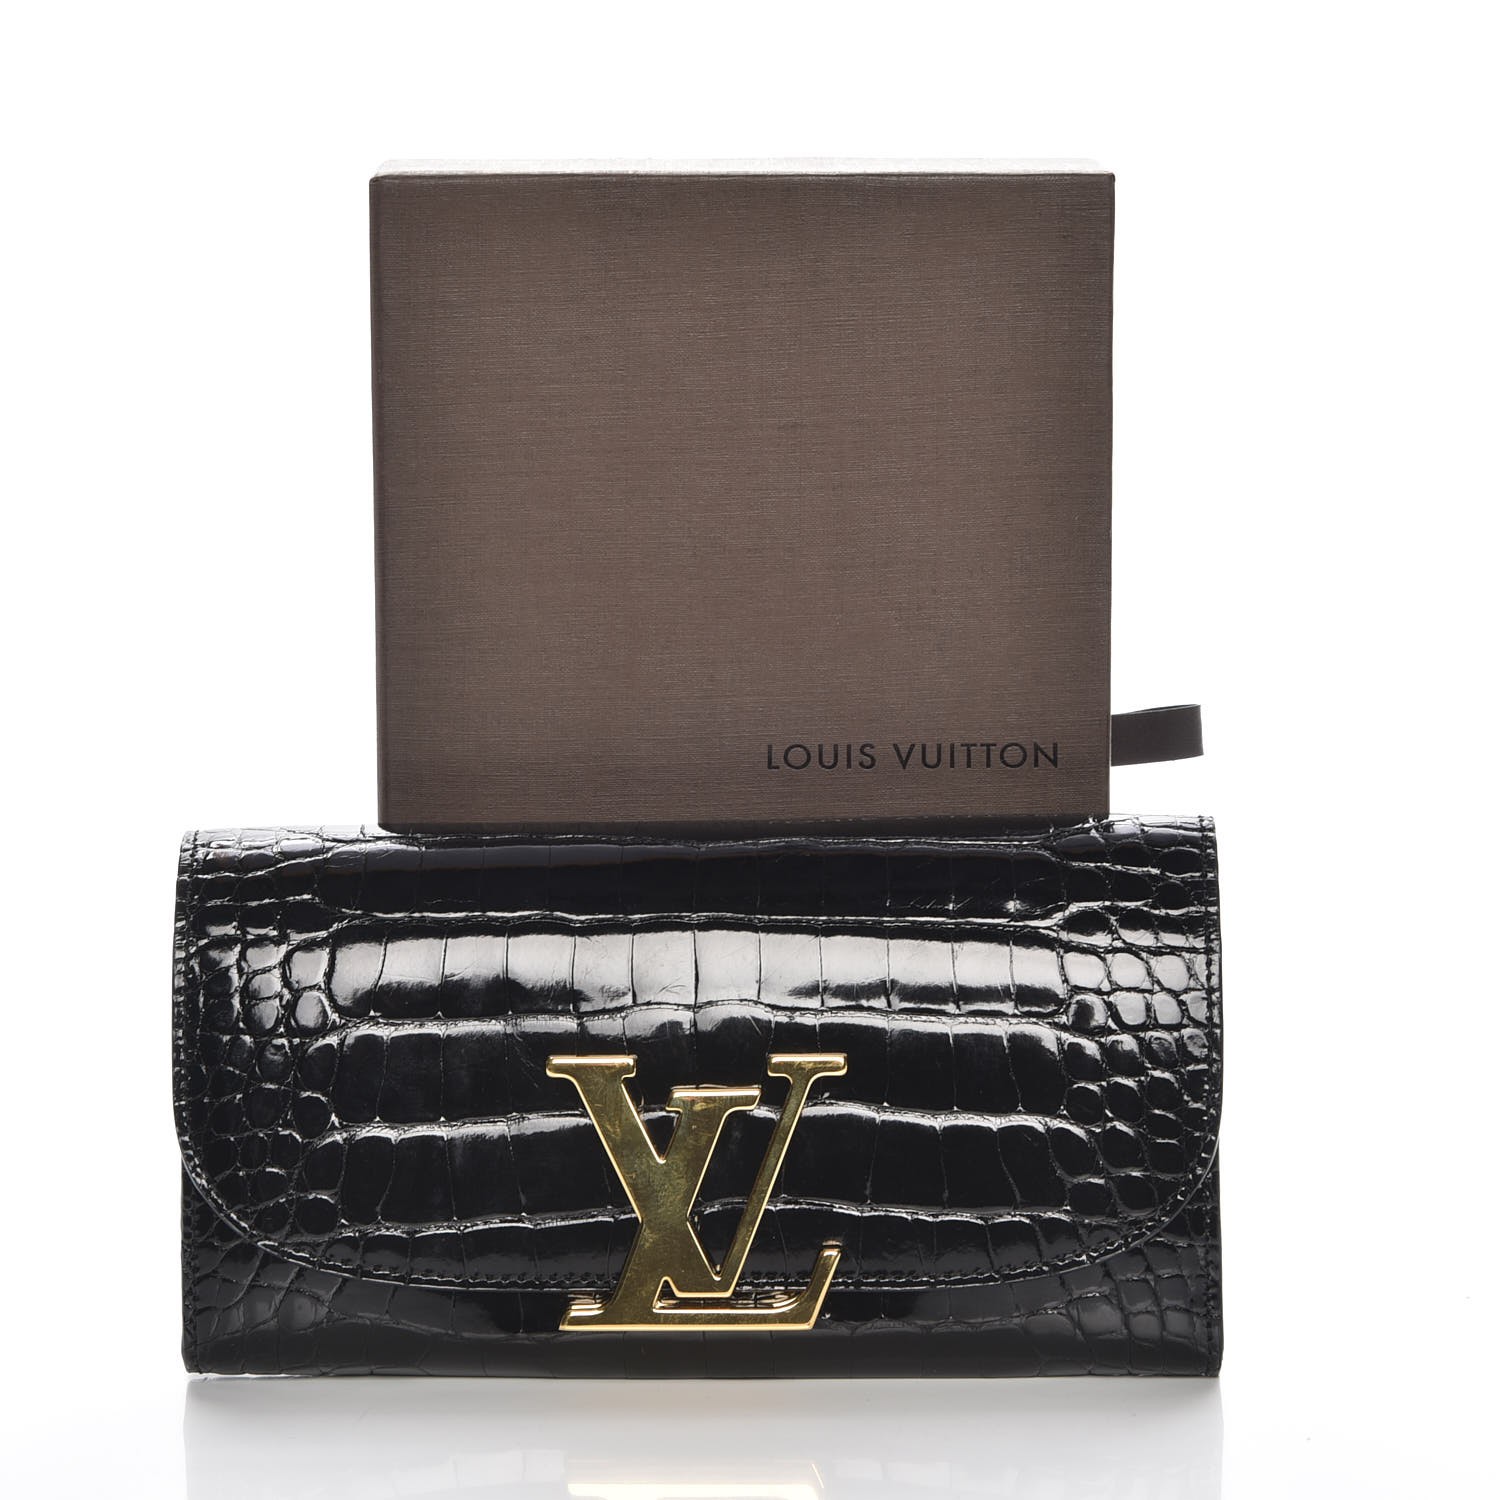 LOUIS VUITTON Alligator Vivienne LV Long Wallet Black 217329 | FASHIONPHILE